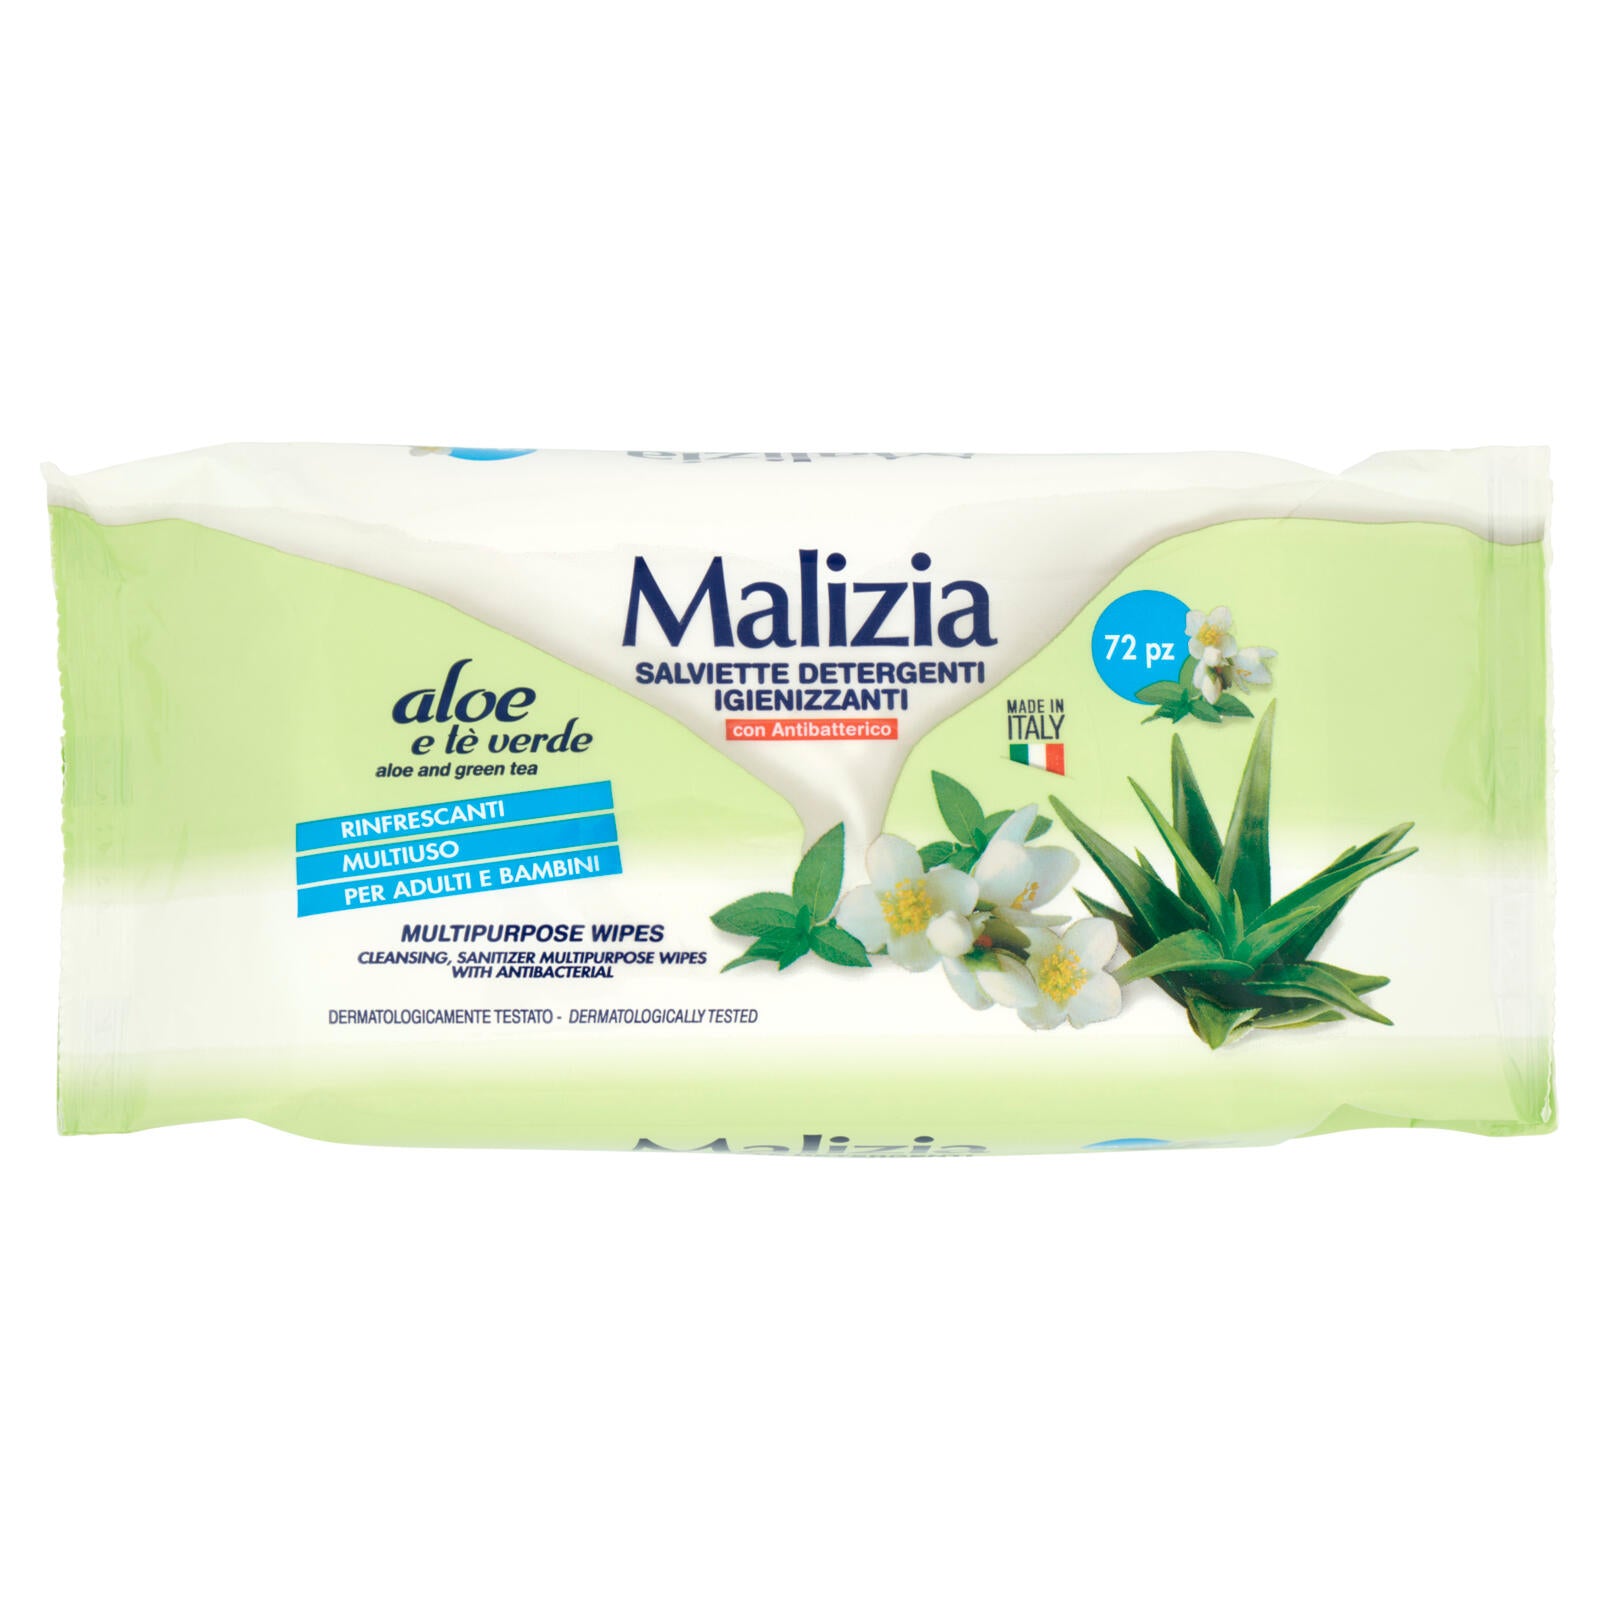 Malizia Salviette Detergenti Igienizzanti con Antibatterico aloe e tè verde 72 pz